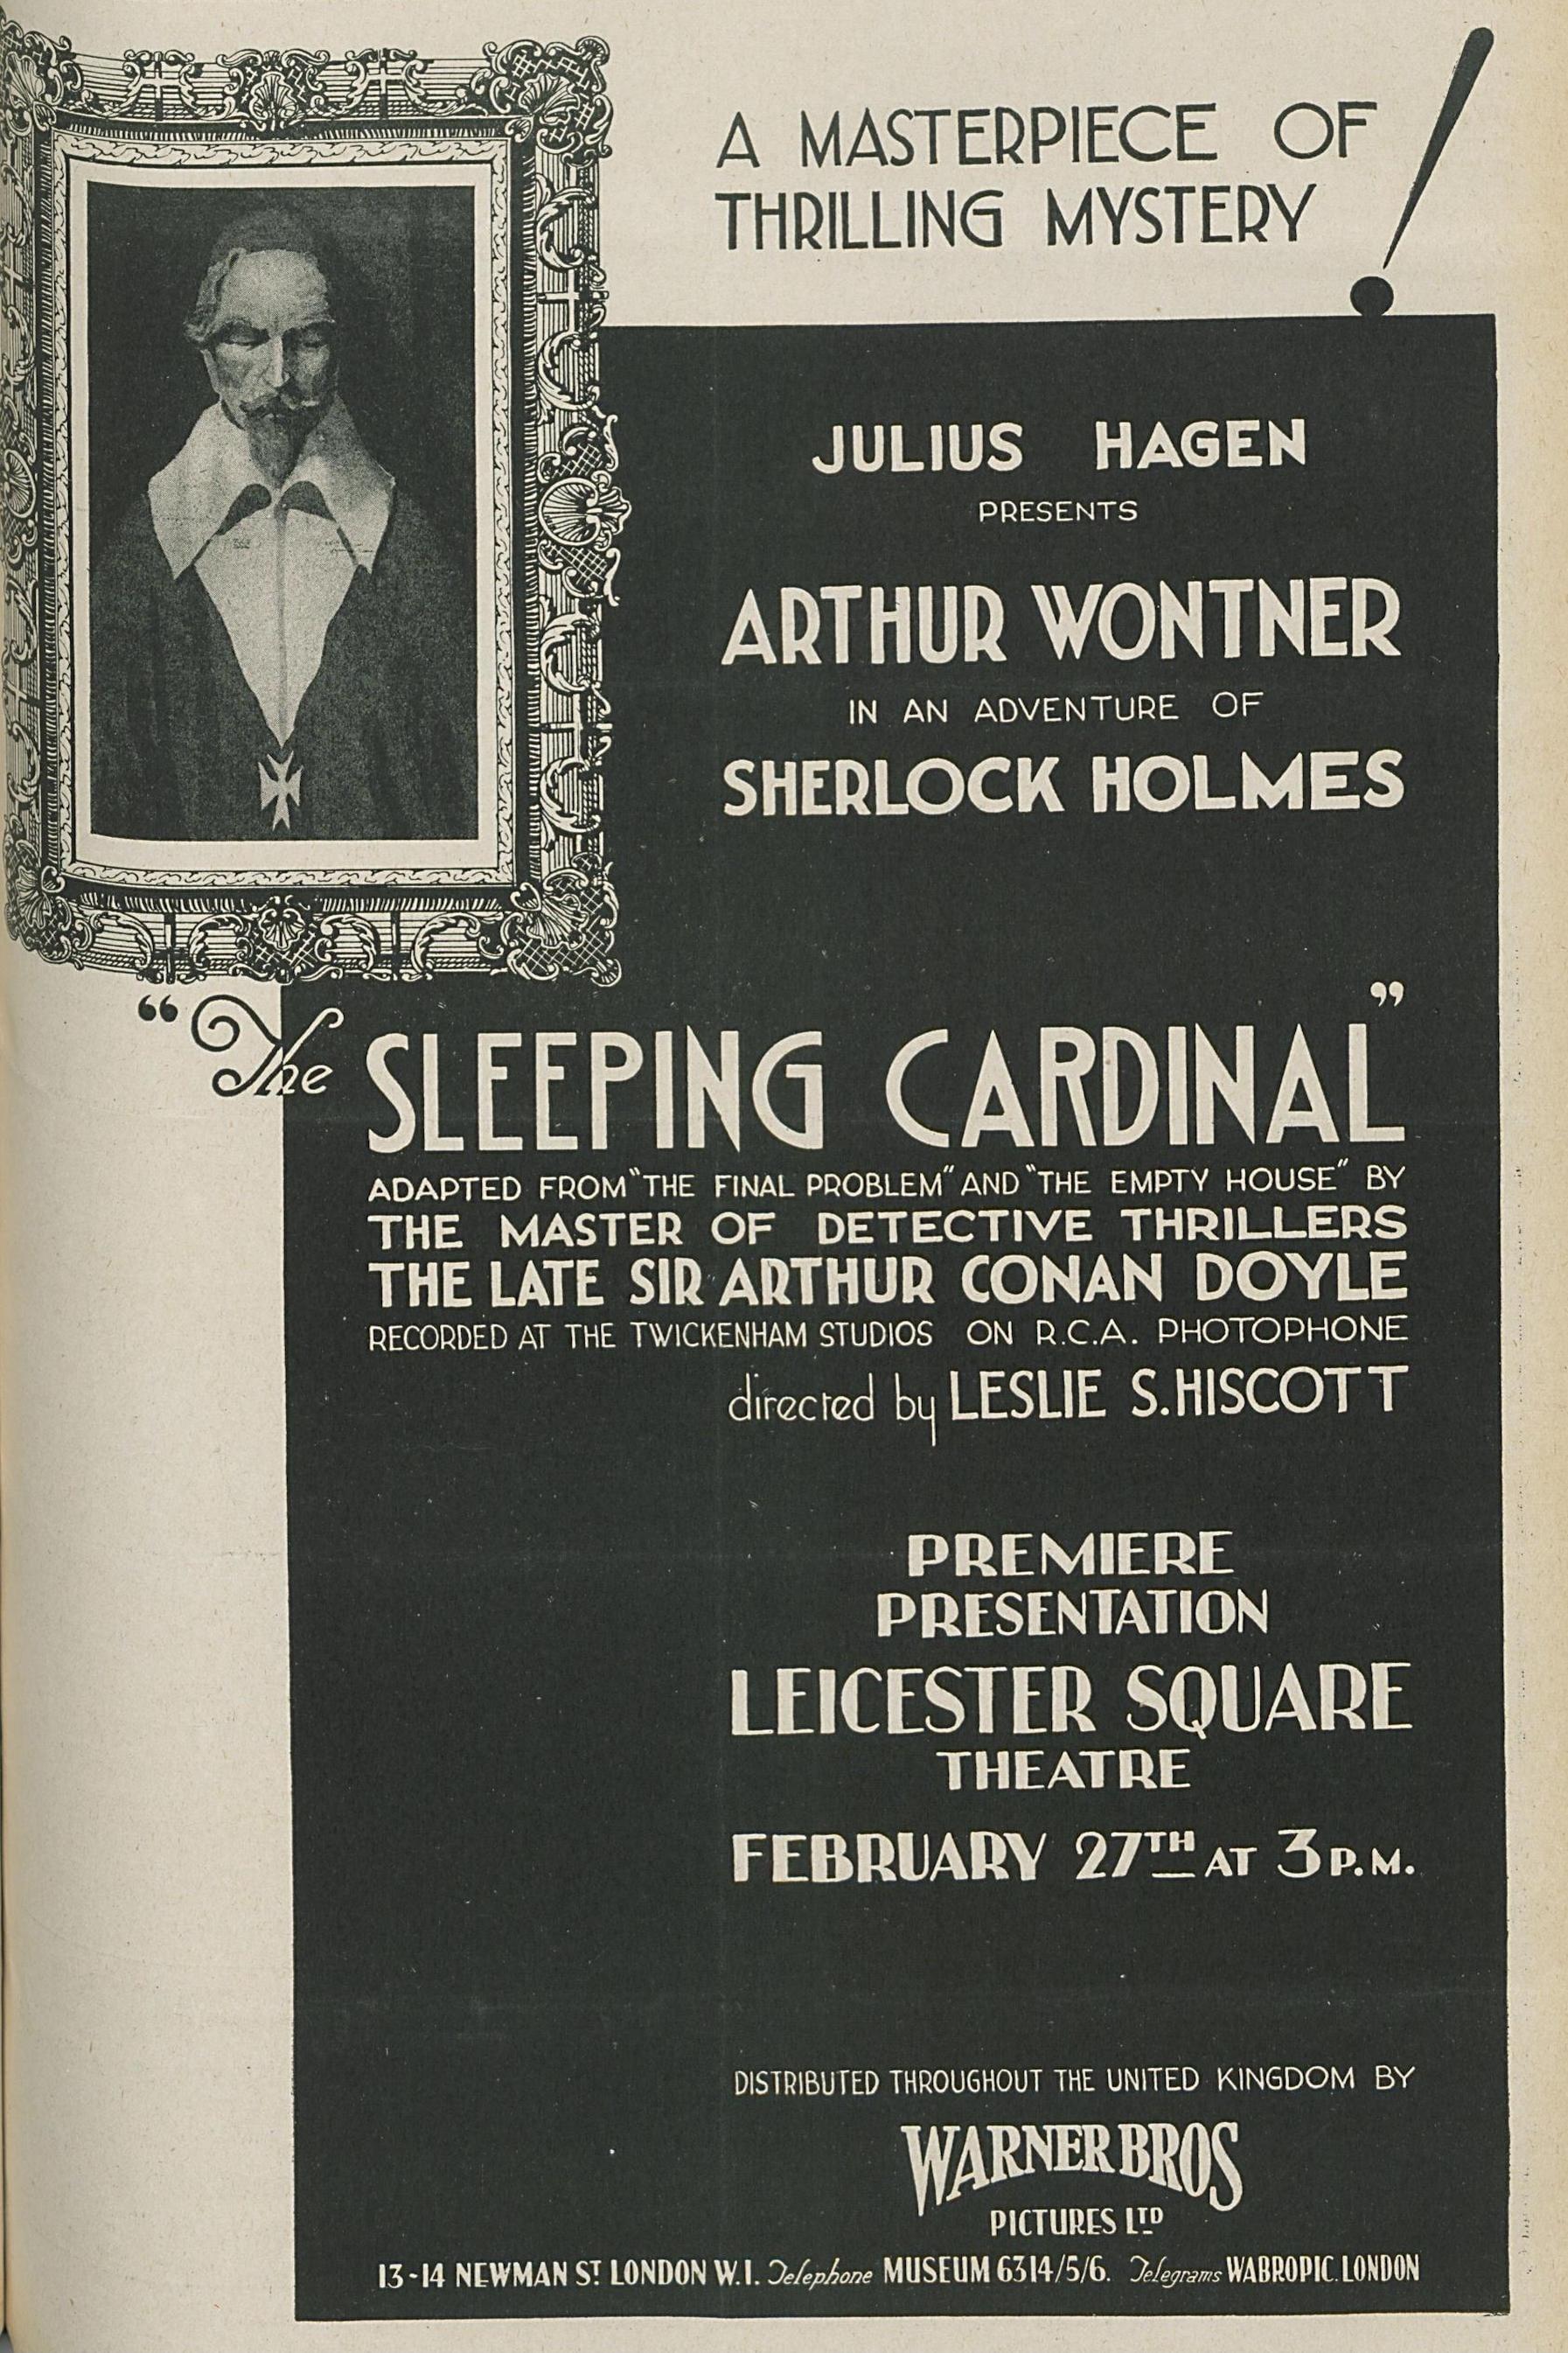 The Sleeping Cardinal poster